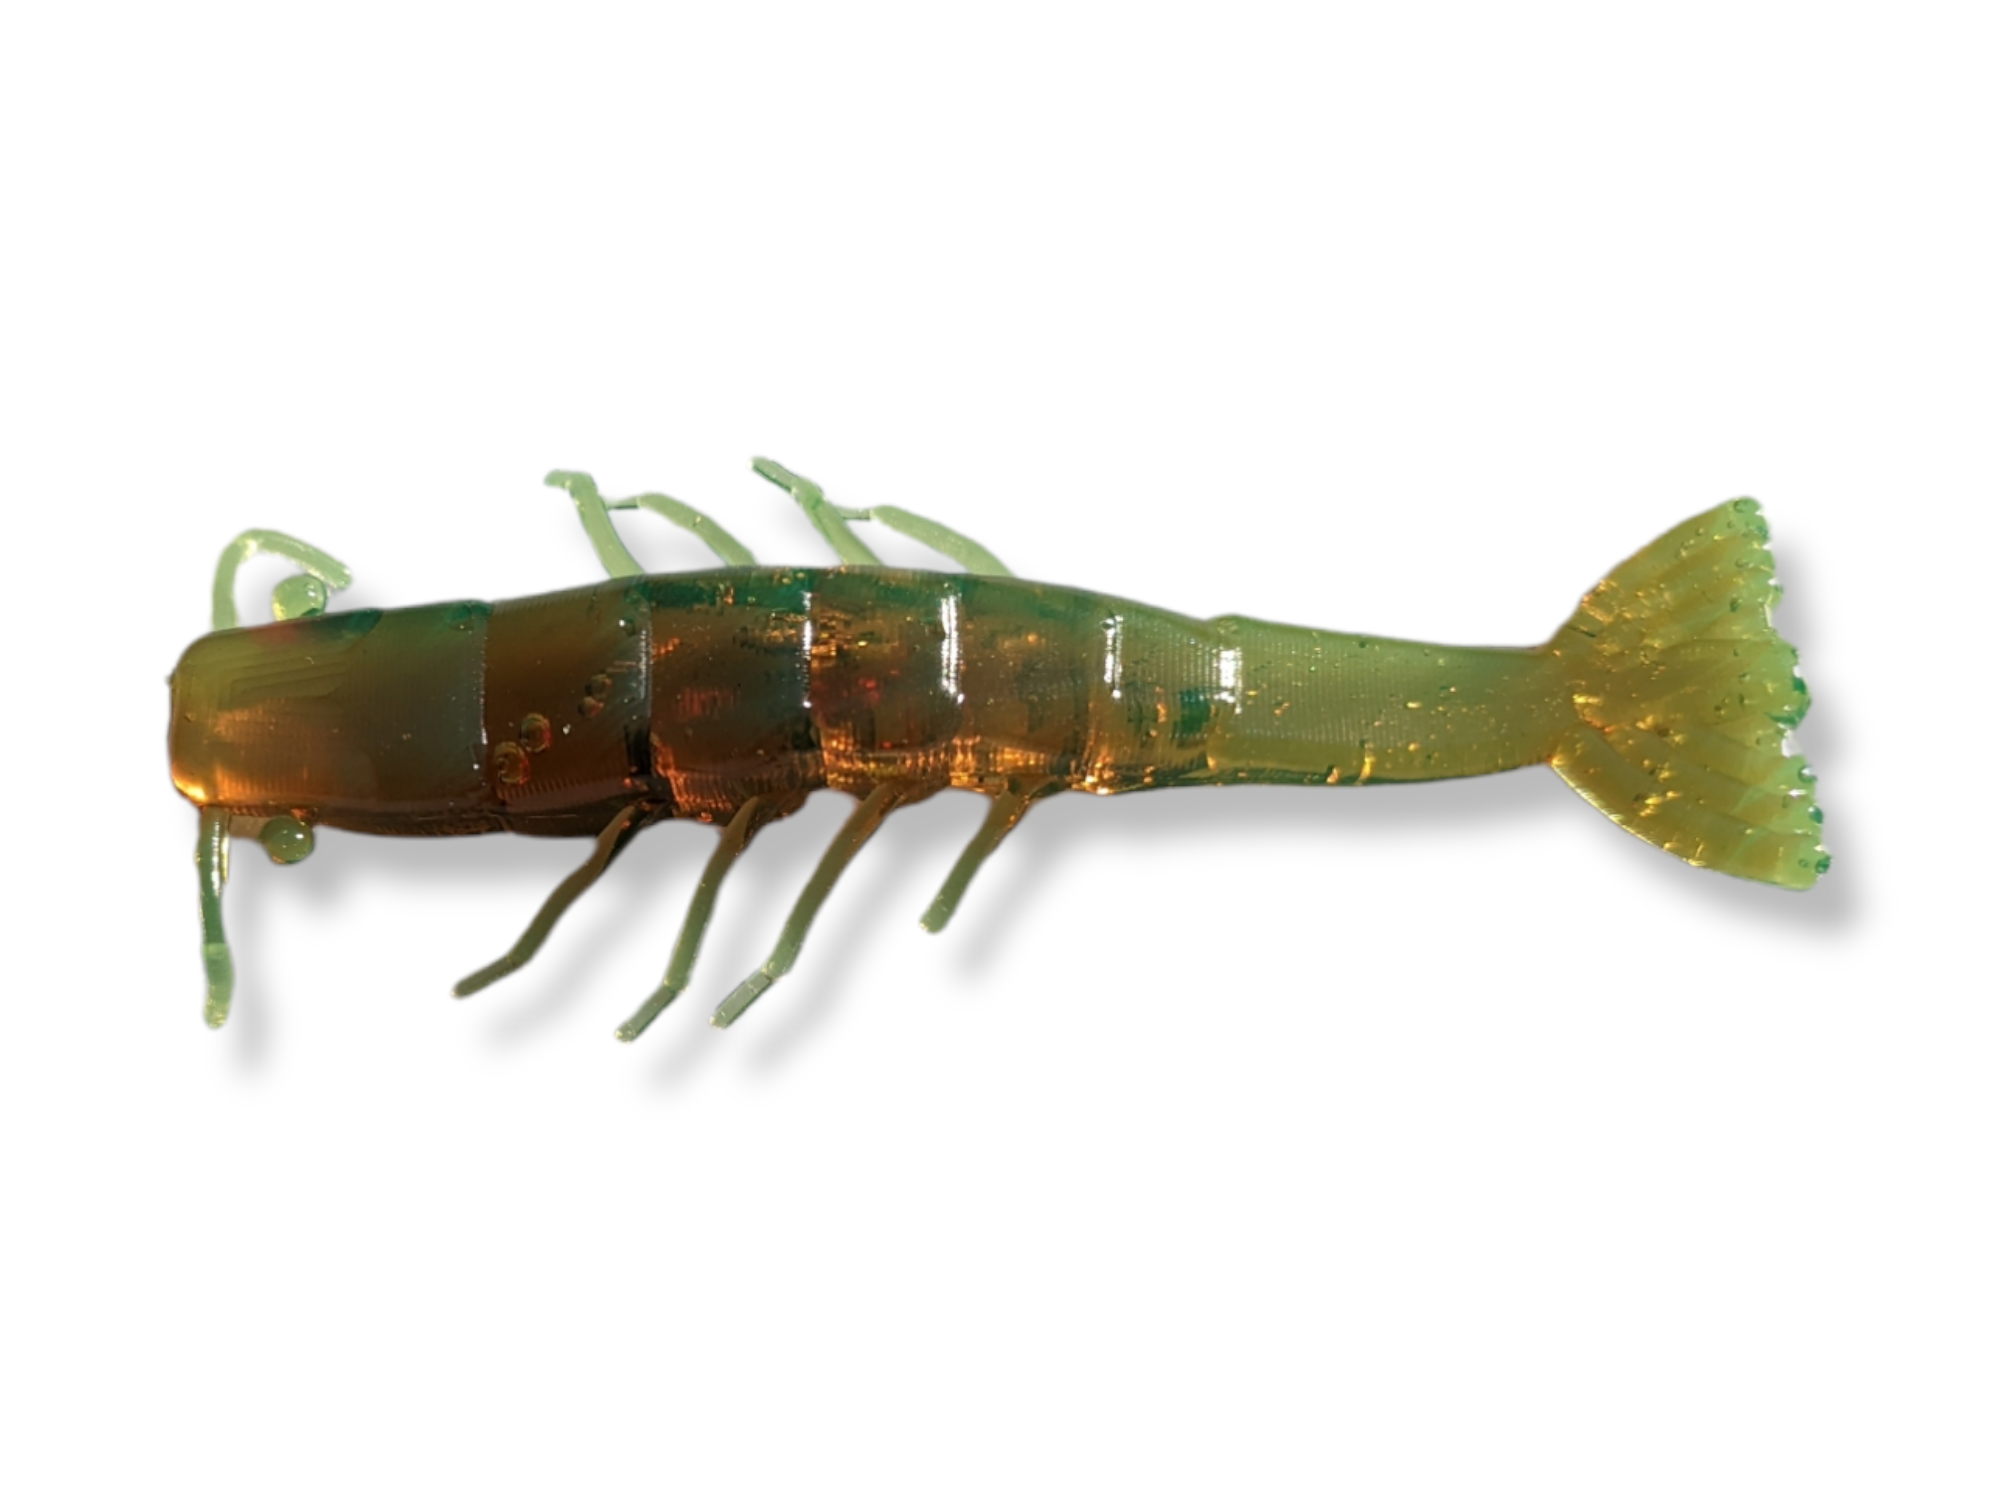 Plastic shrimp bait by MasterBait Co